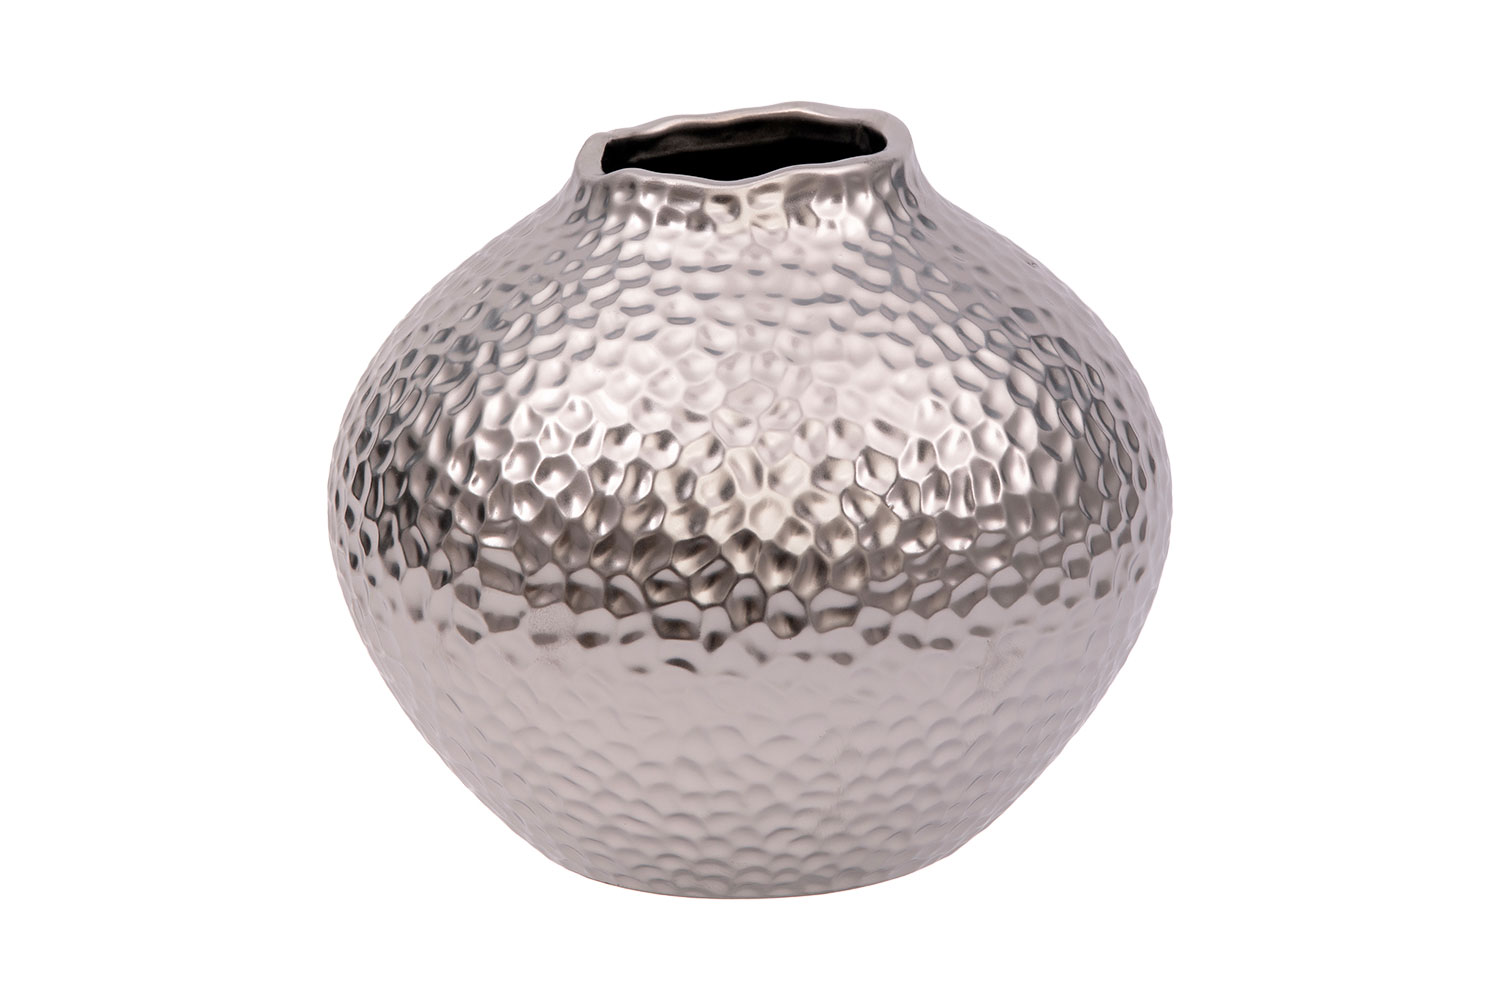 Вазы - изображение №2 "Декоративная ваза Этно"  на www.Angstrem-mebel.ru